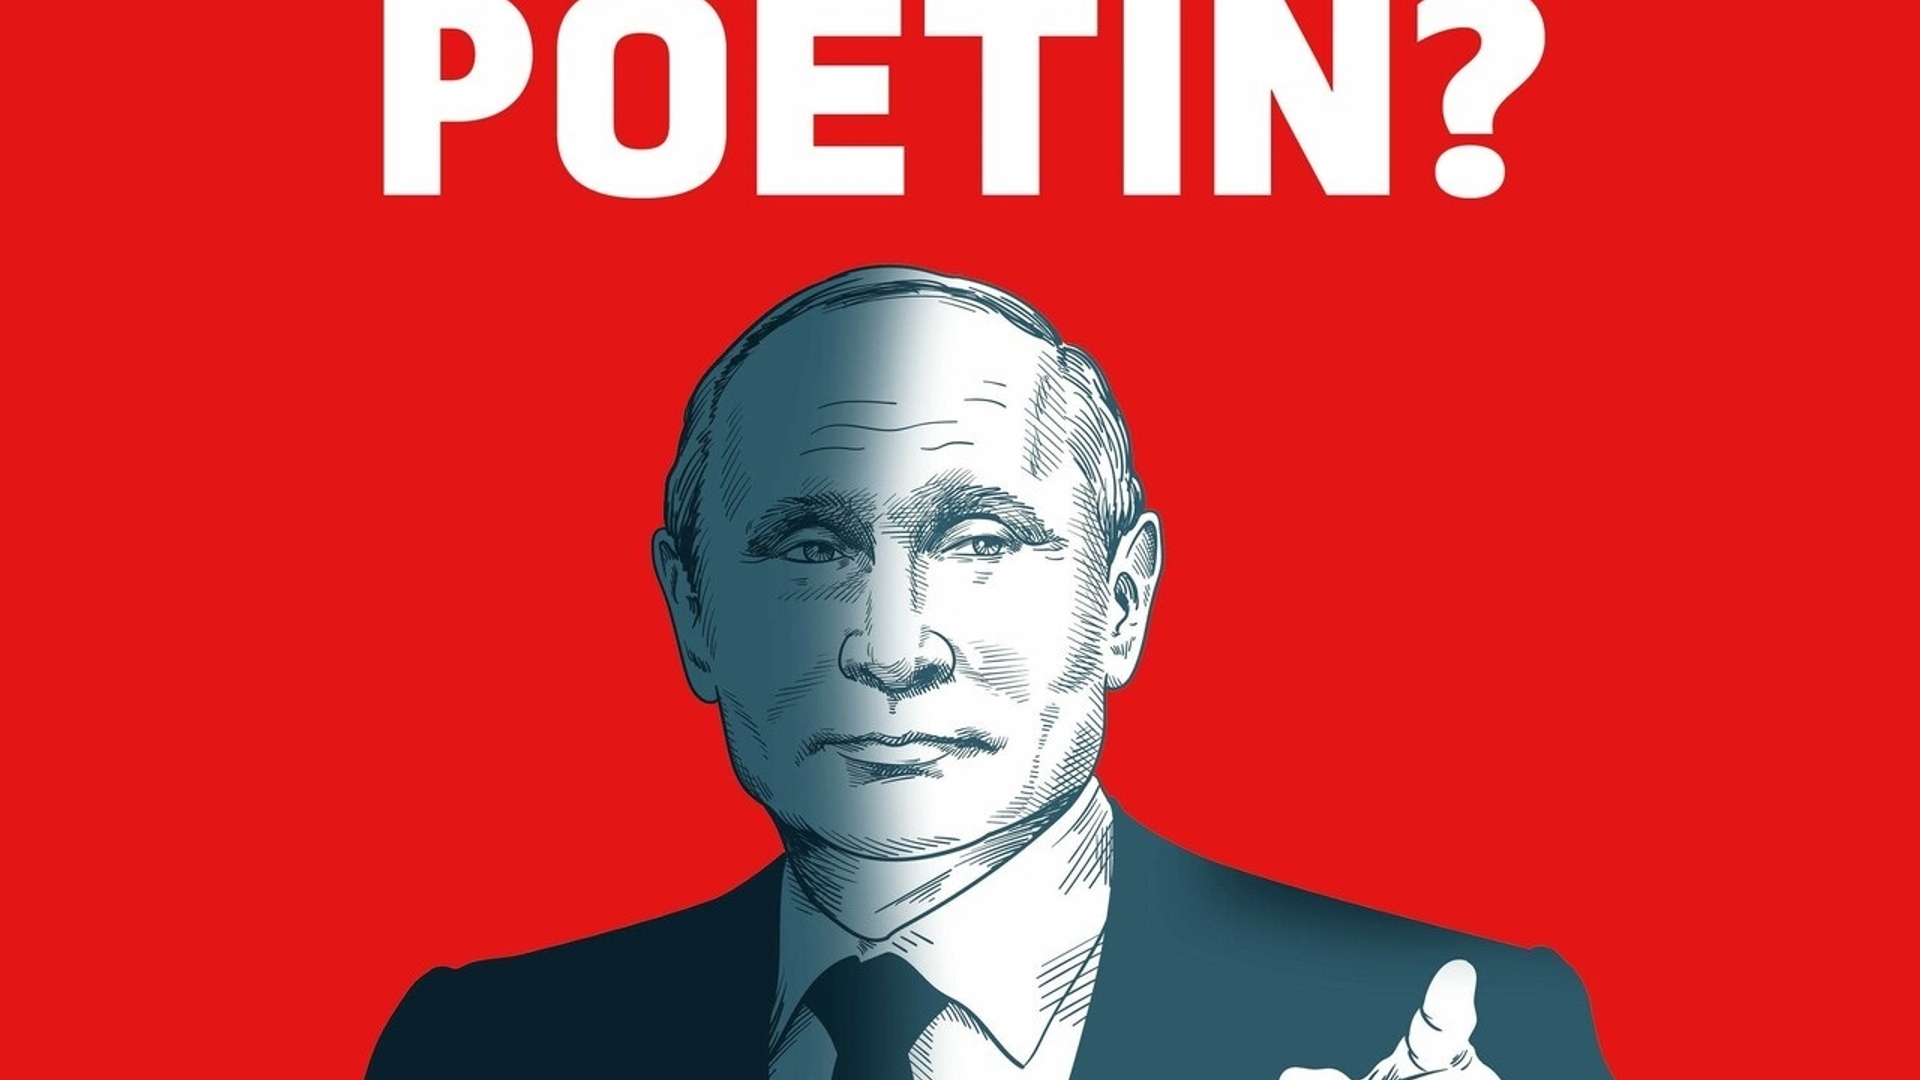 Wie is Poetin?